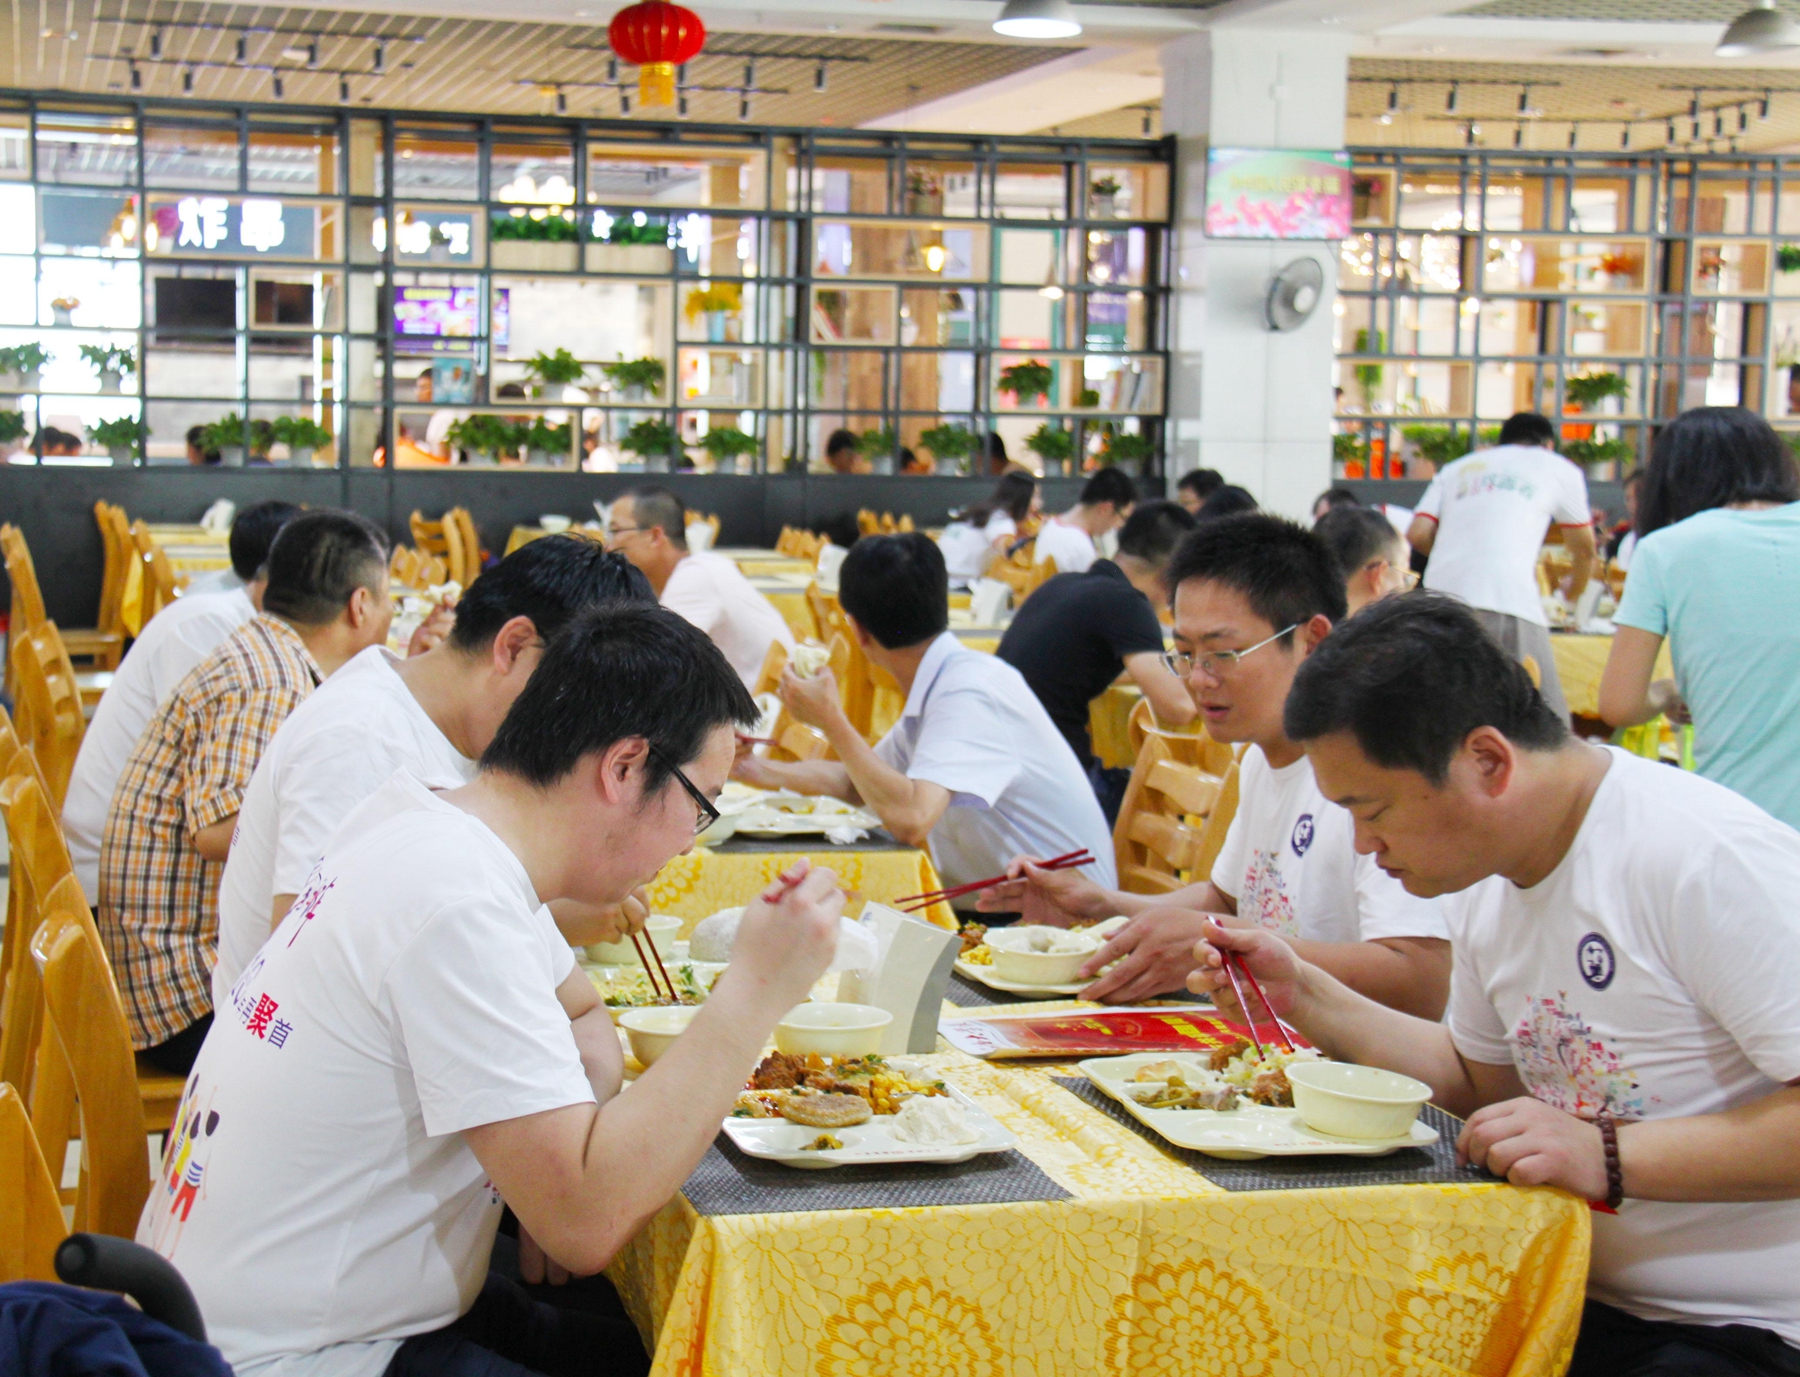 15校友午餐-照片提供教工餐厅.JPG